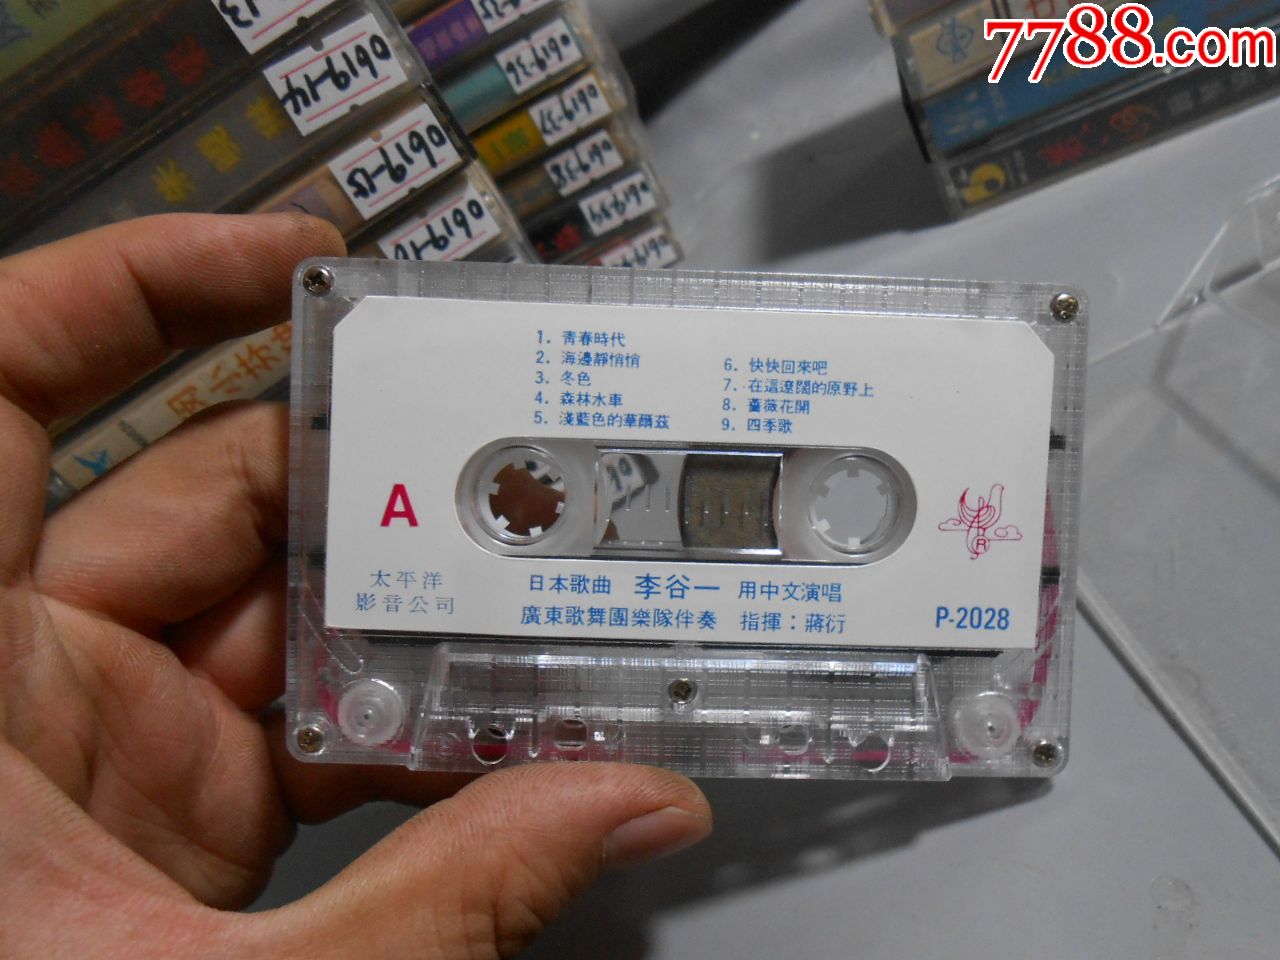 李谷一--日本歌曲,老磁带0619-5,磁带/卡带,音乐卡带,标准型卡带,年代